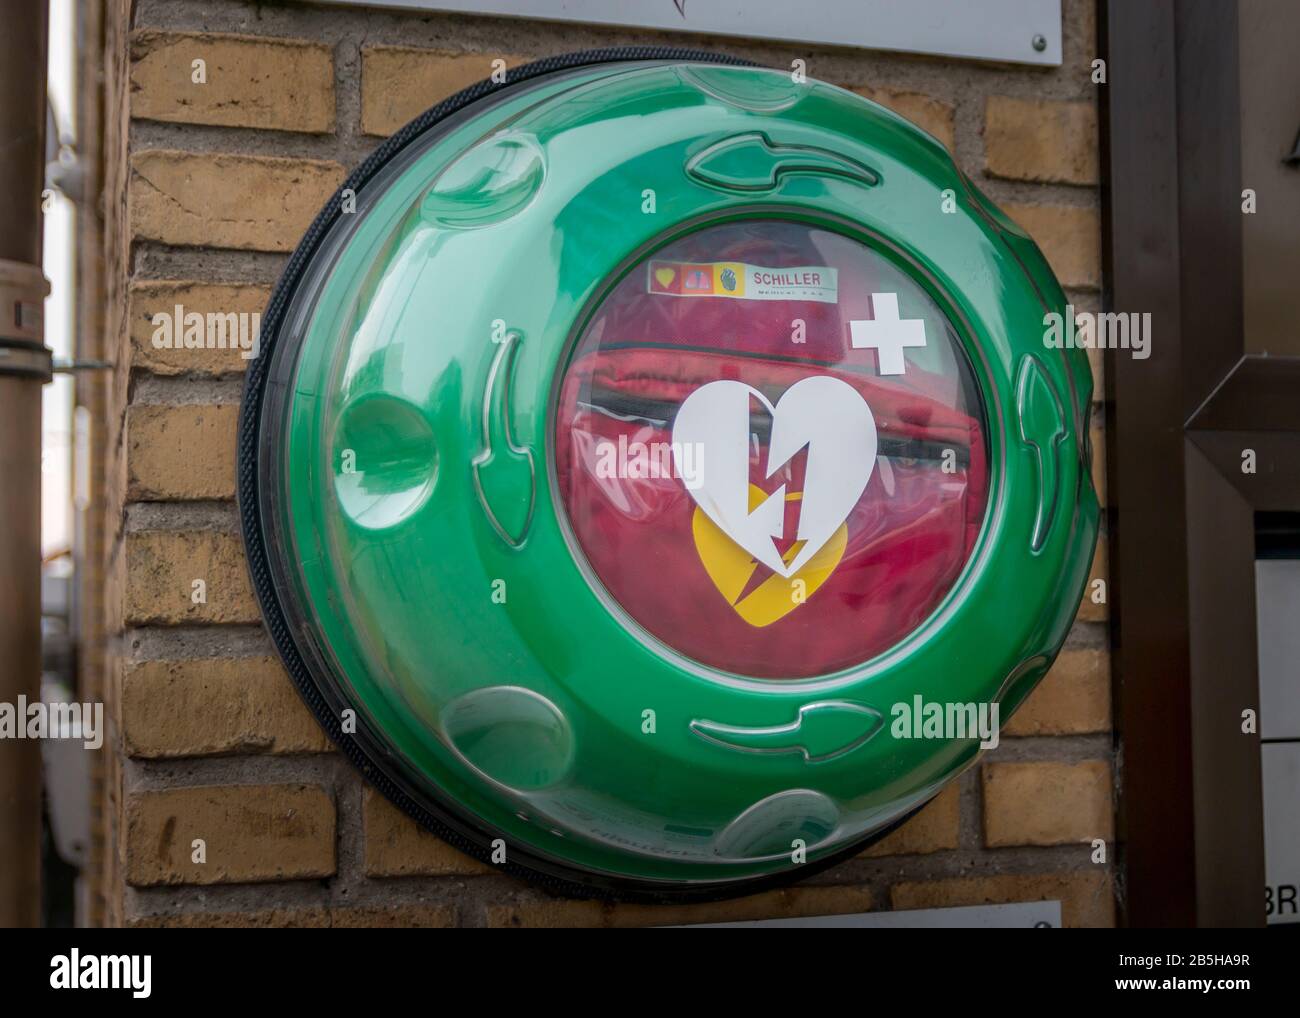 Randers, Danimarca - 09 febbraio 2020: Defibrillatore semiautomatico esterno AED Philips per strada nella città di Randers, Danimarca. Kit di salvataggio RCP AED. Foto Stock